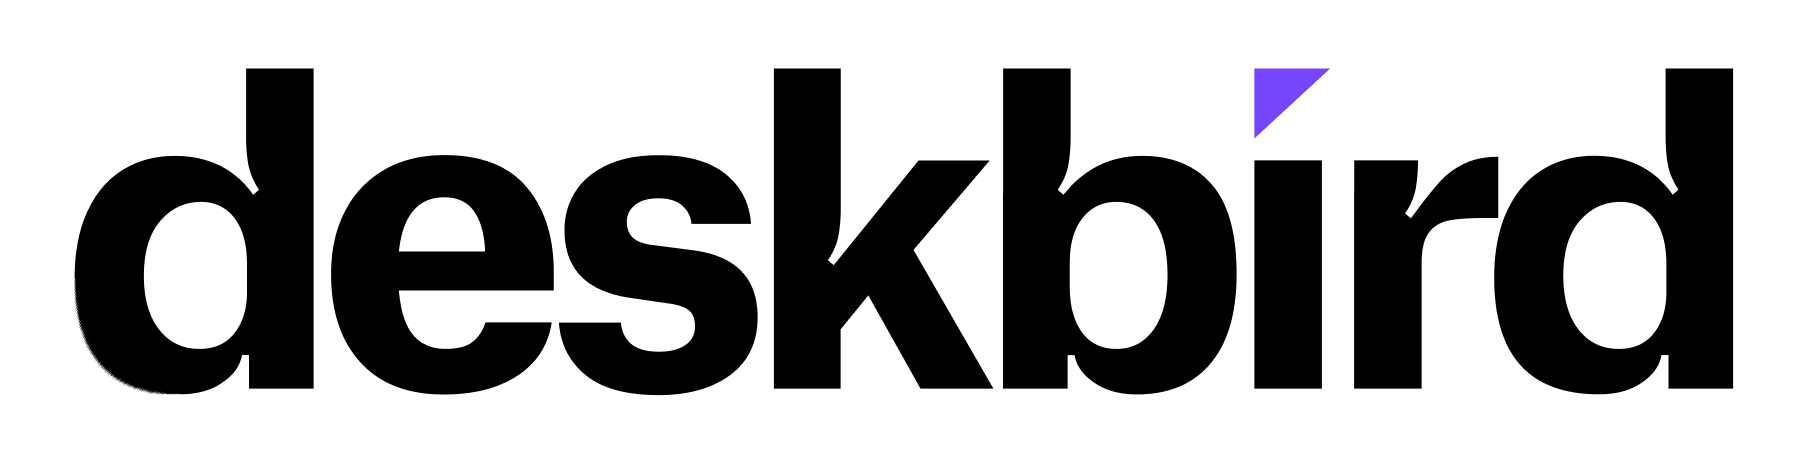 deskbird App-logo